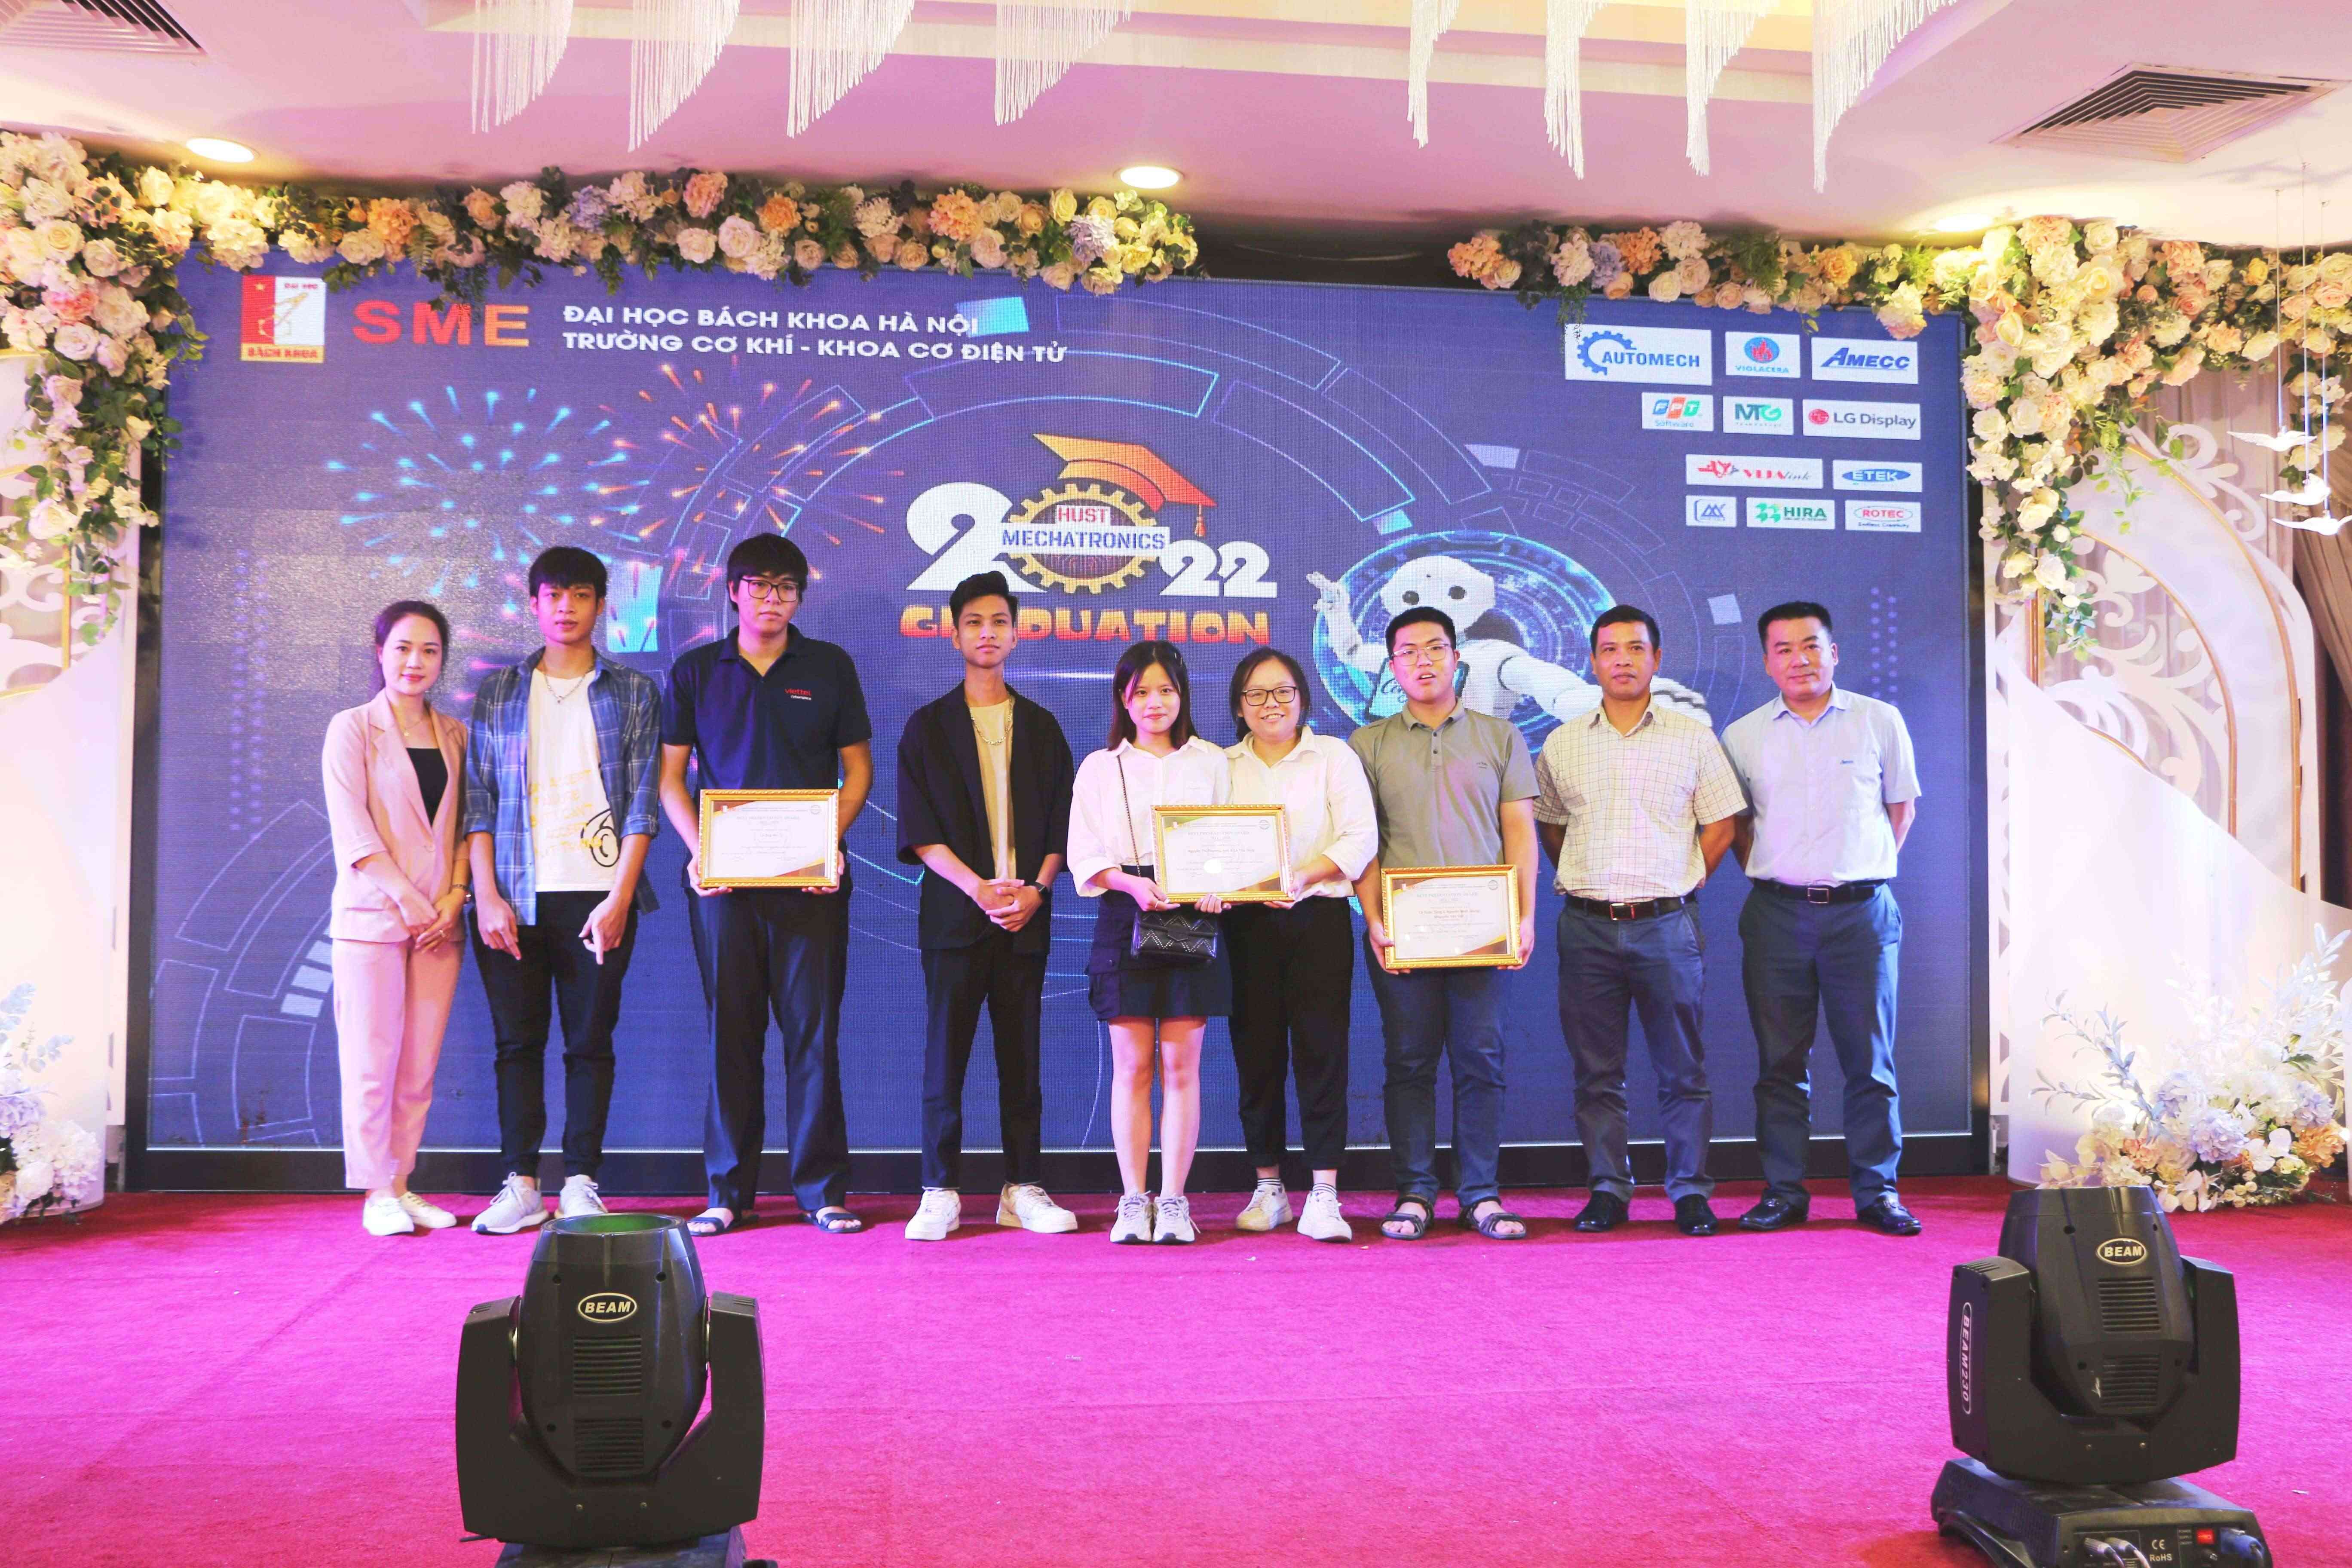 Amecc – Tham dự ngày hội tuyển dụng tại trường Đại học bách khoa Hà Nội